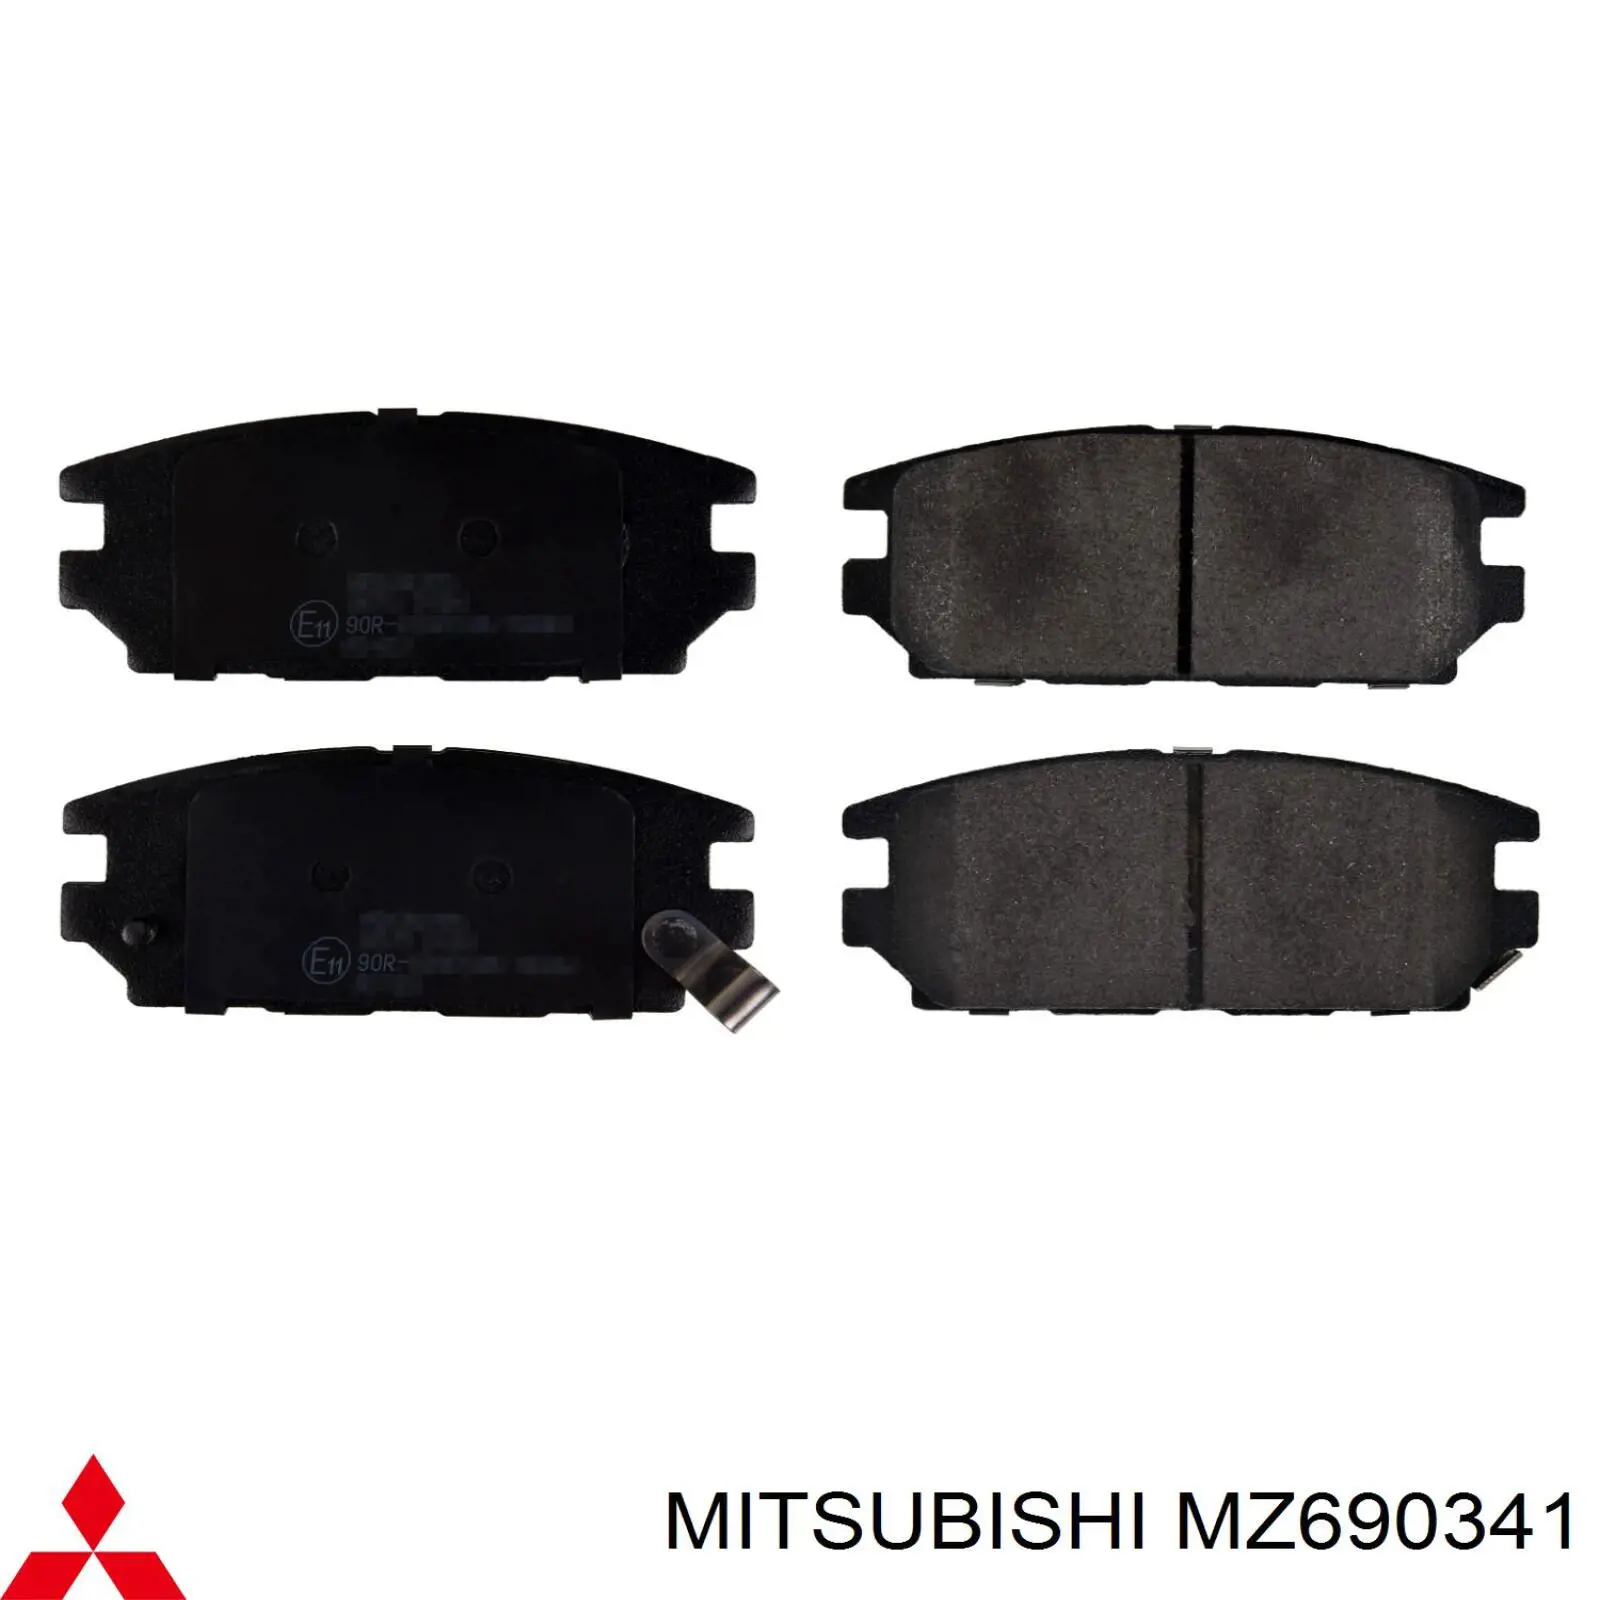 MZ690341 Mitsubishi pastillas de freno traseras